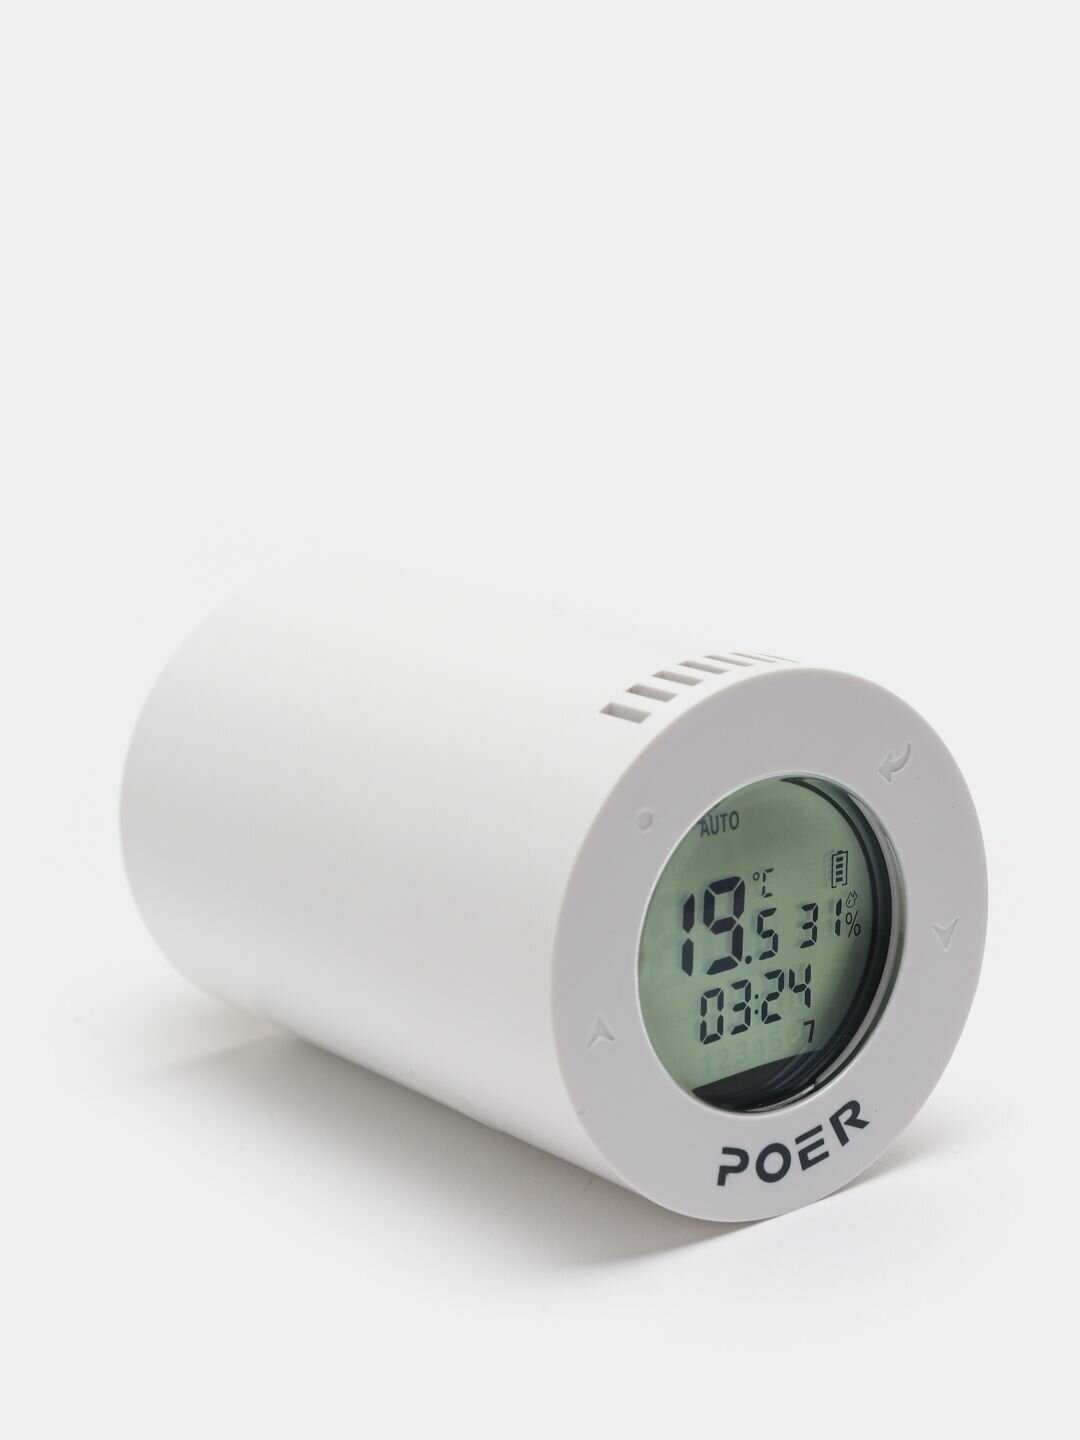 Умный термостат на батарею Poer ptv30 беспроводной с возможностью управления через интернет